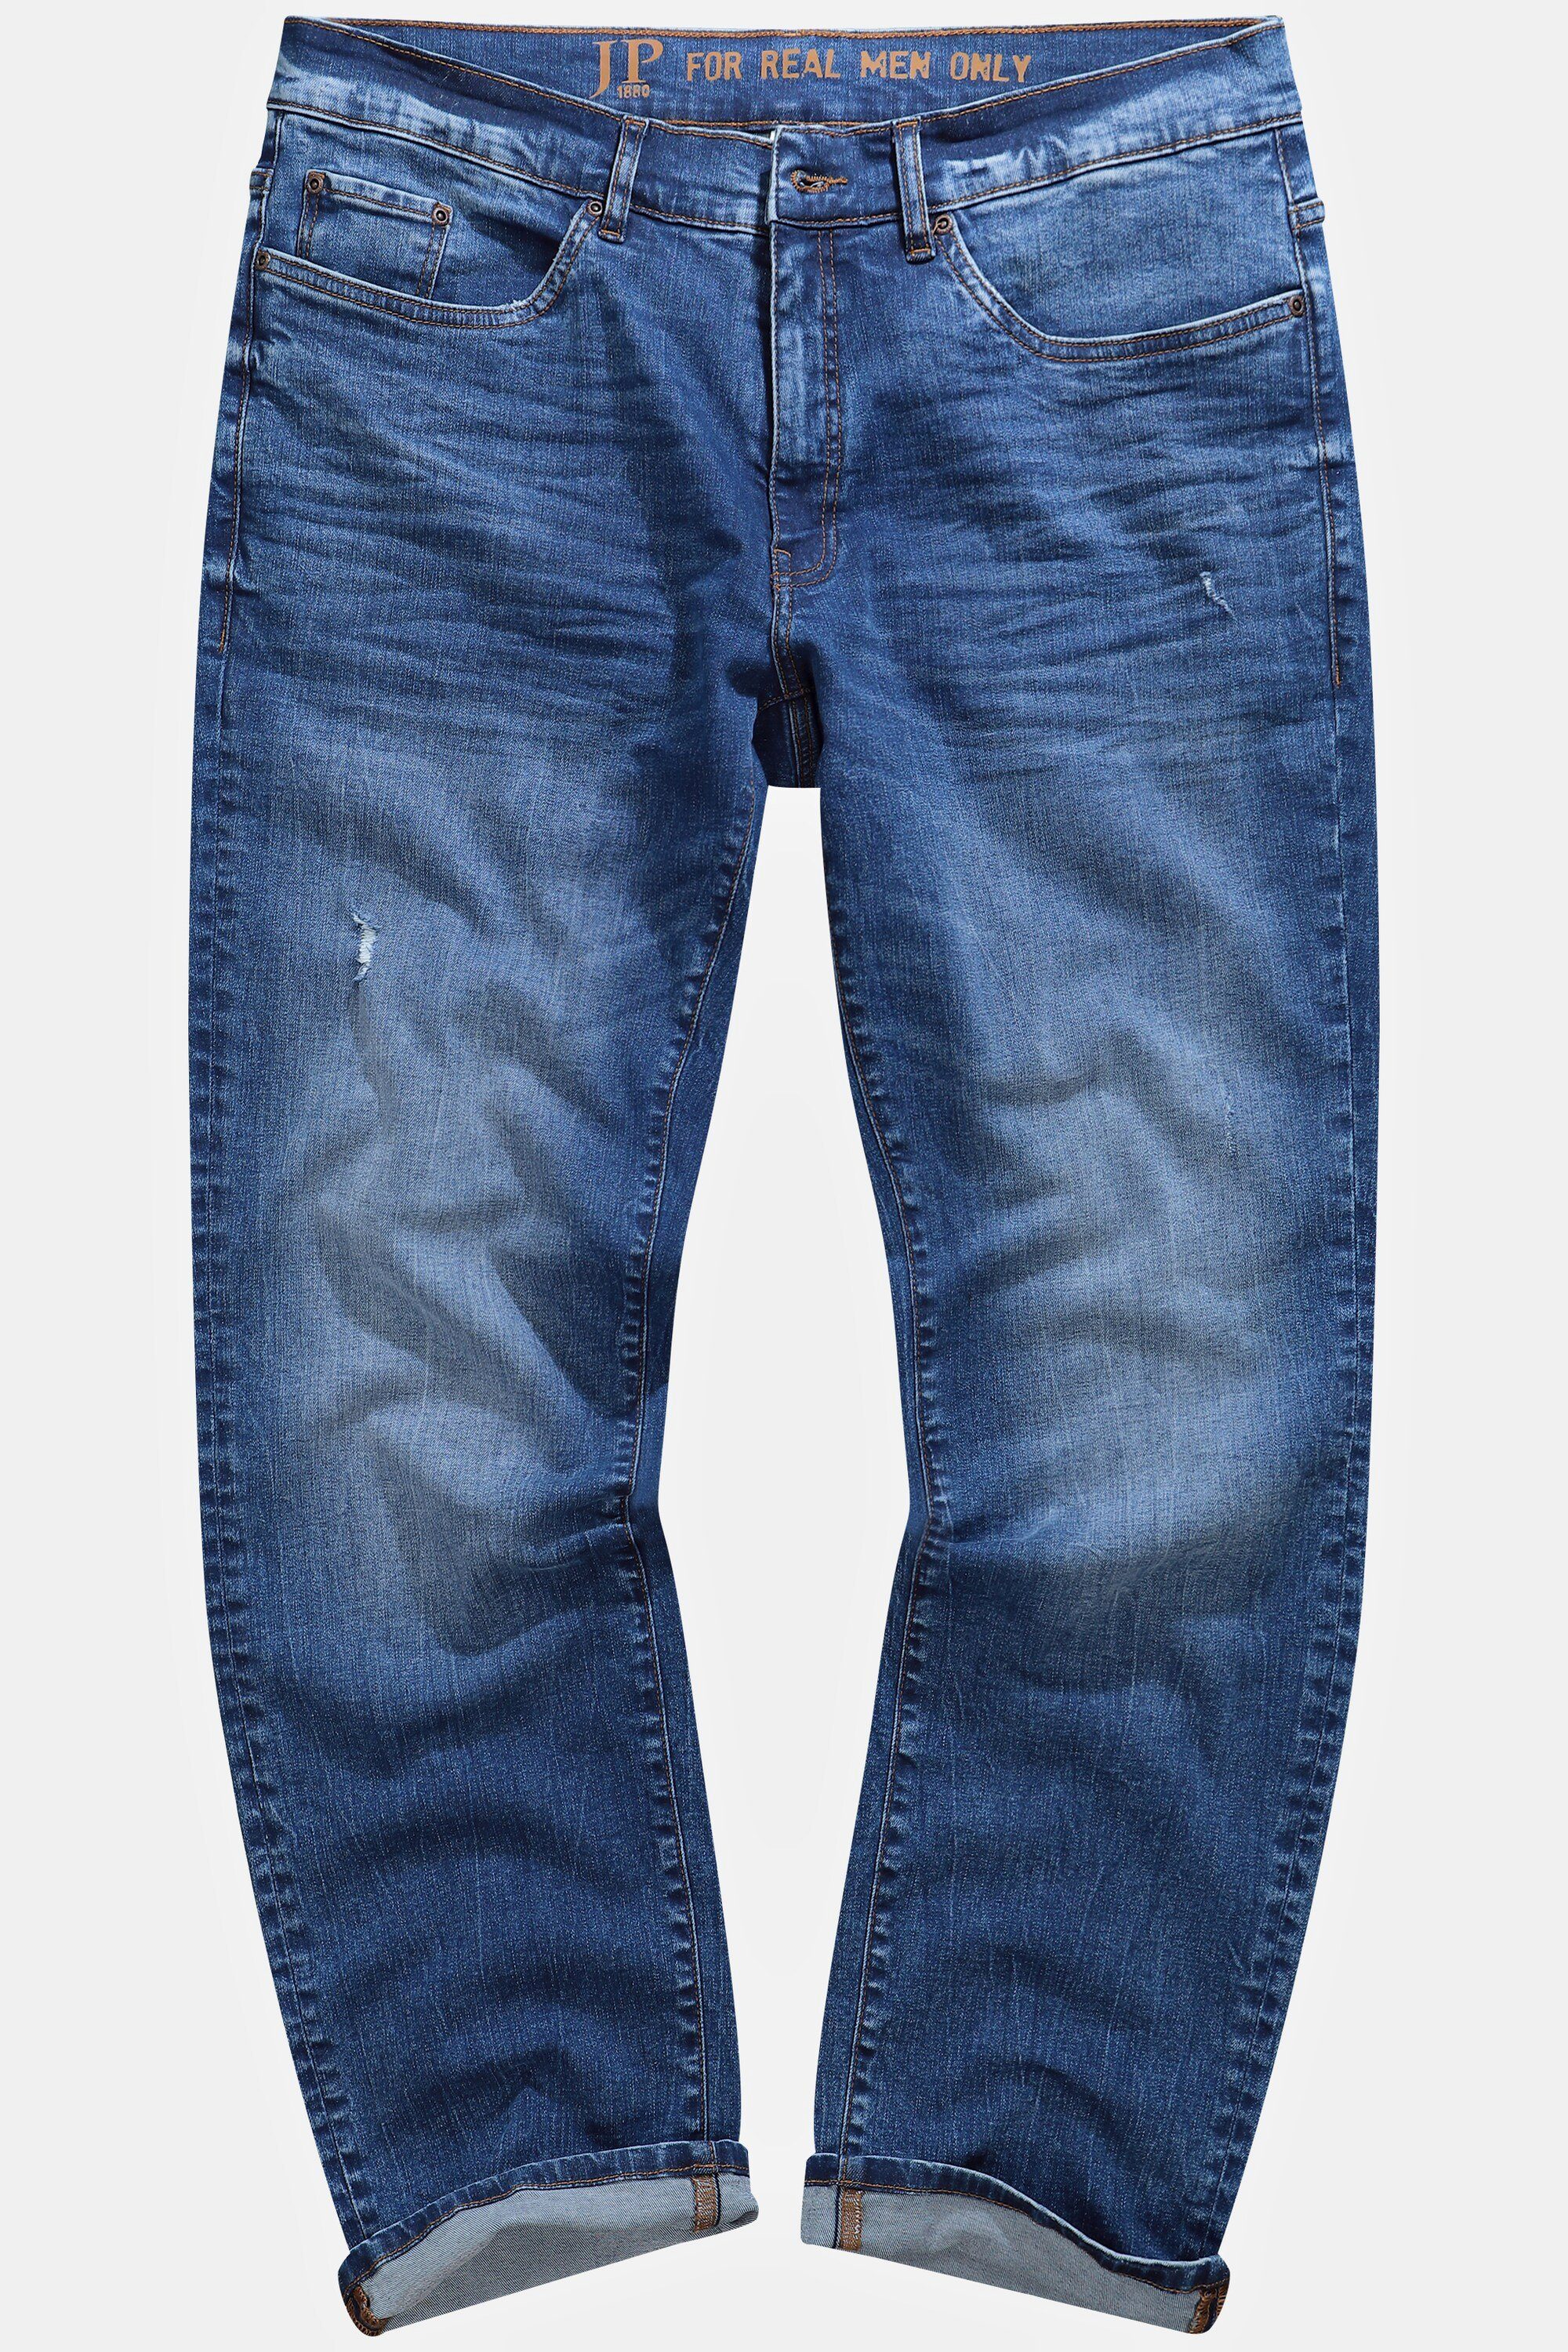 5-Pocket-Jeans Vintage Fit denim Jeans JP1880 Look blue Regular FLEXNAMIC® Denim